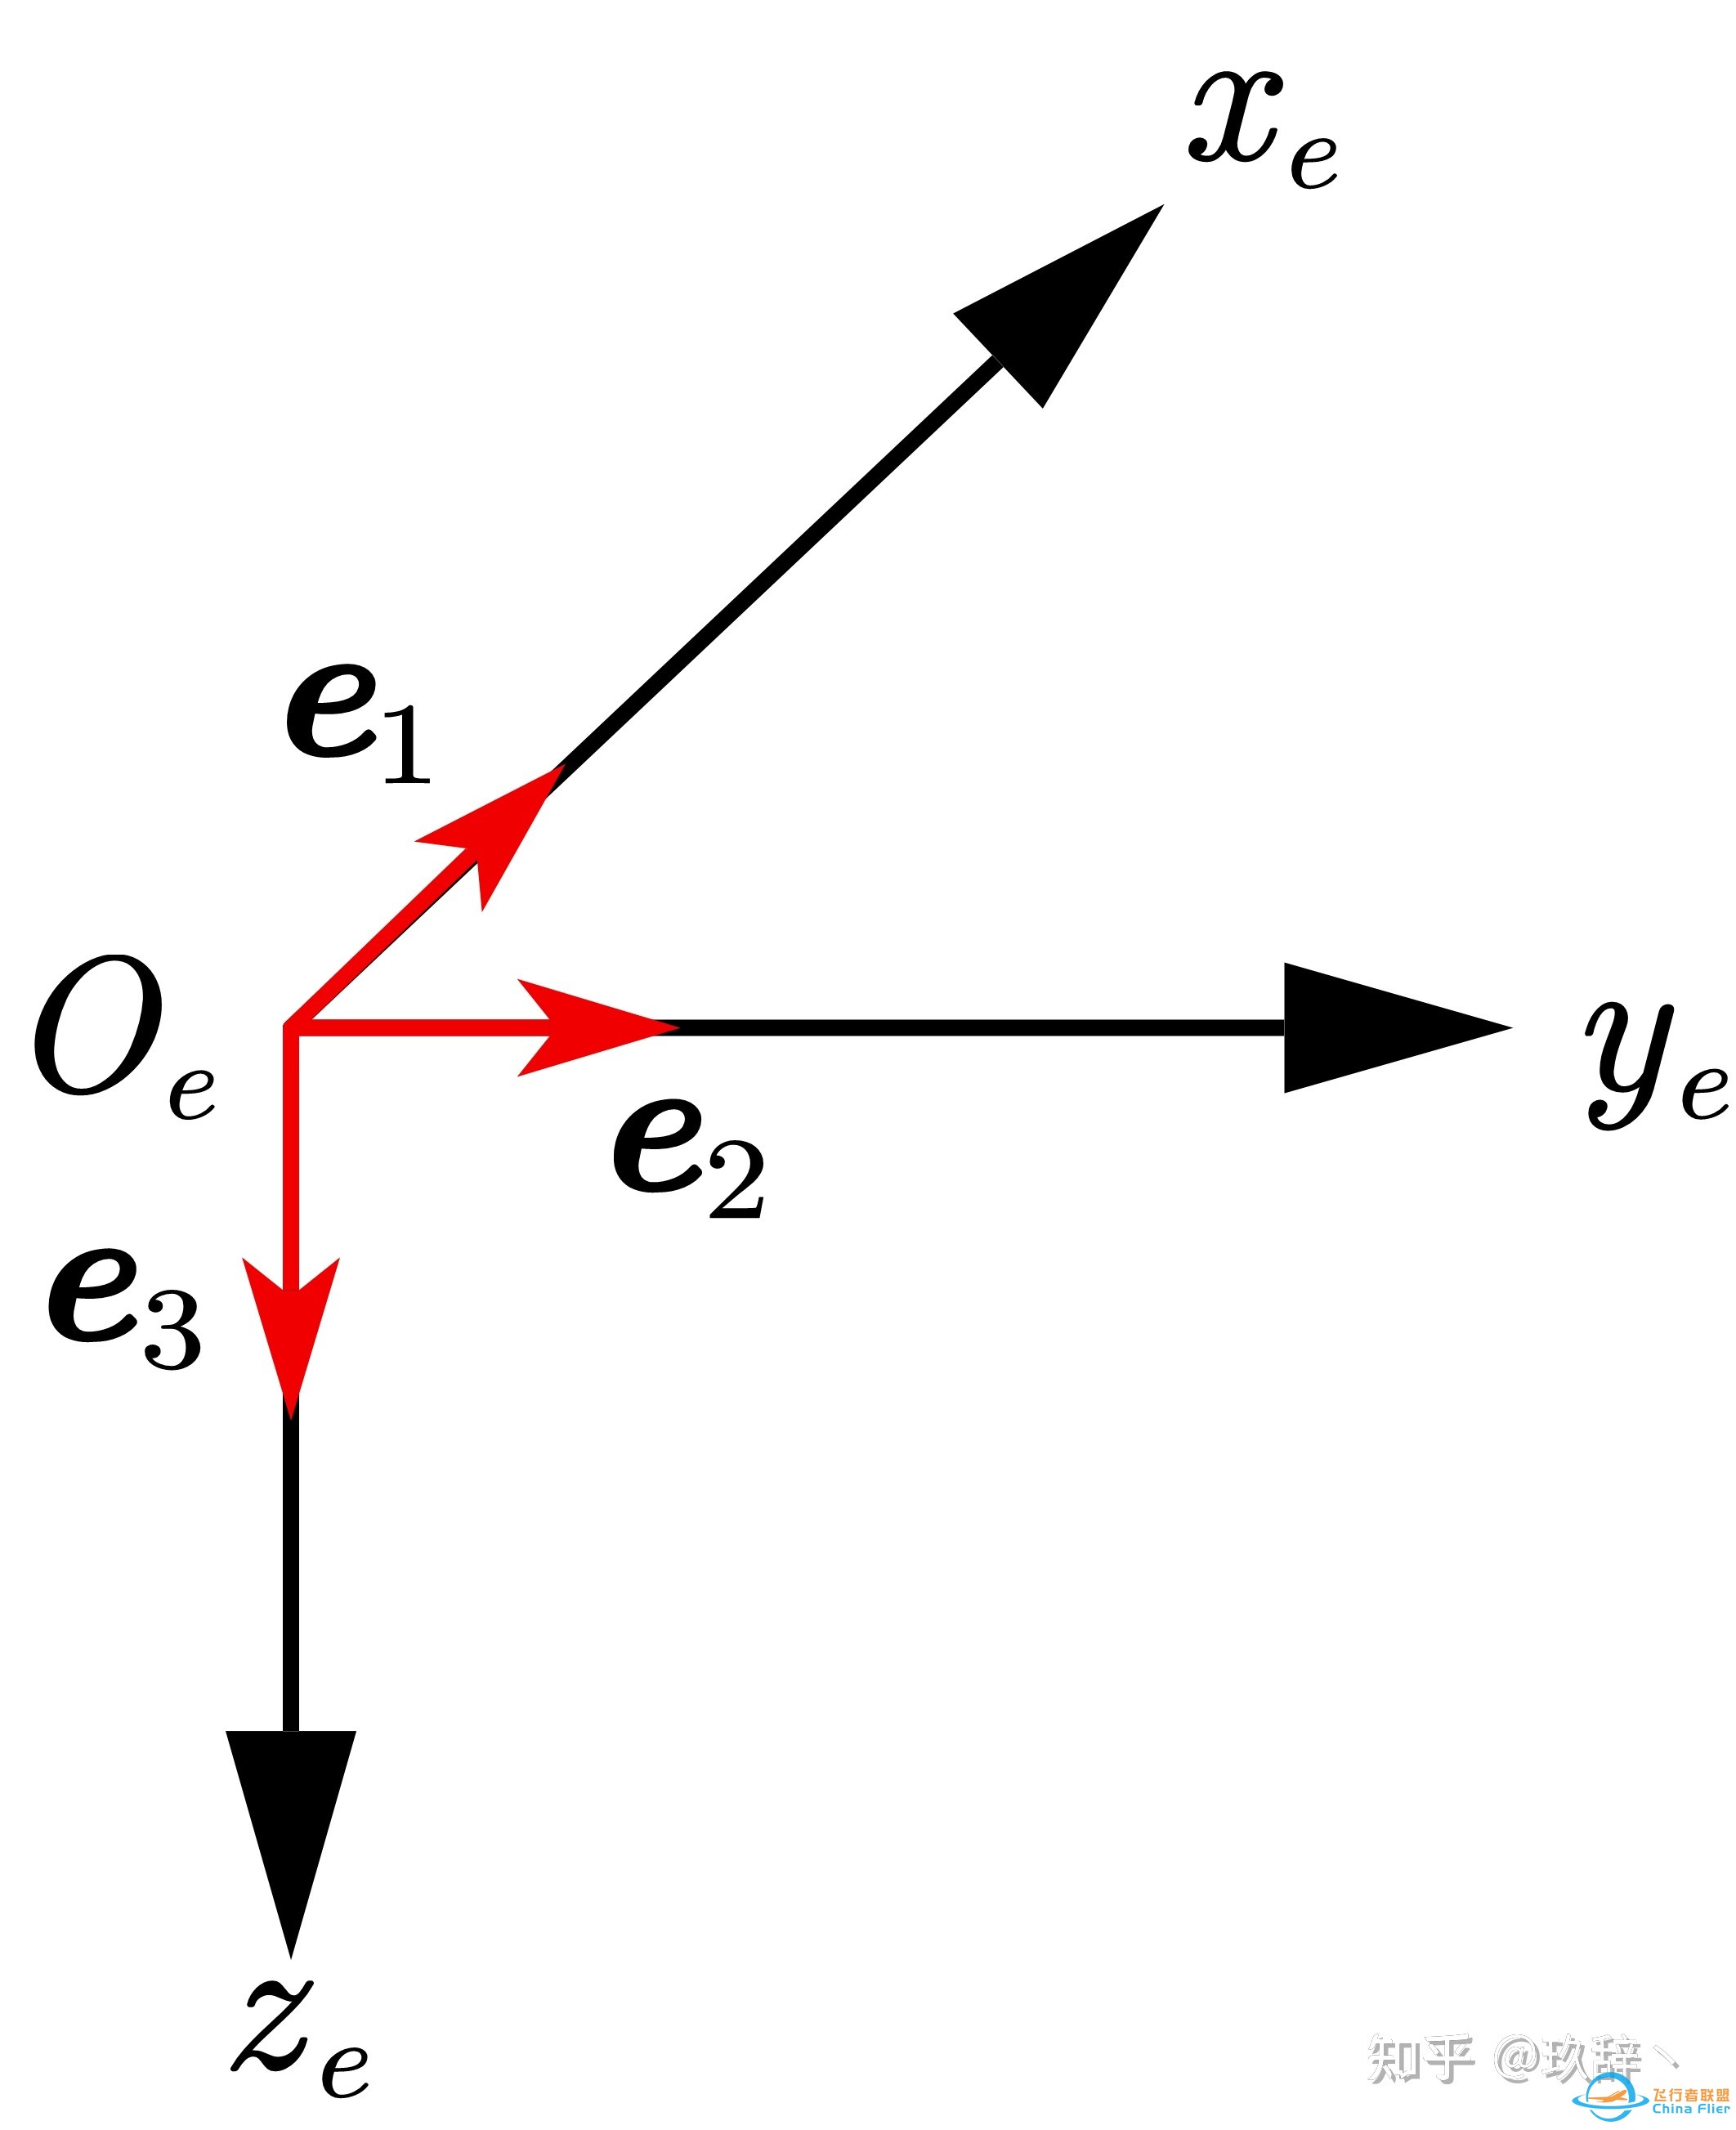 四旋翼飞行器建模（一）— 动力学及运动学方程-7.jpg